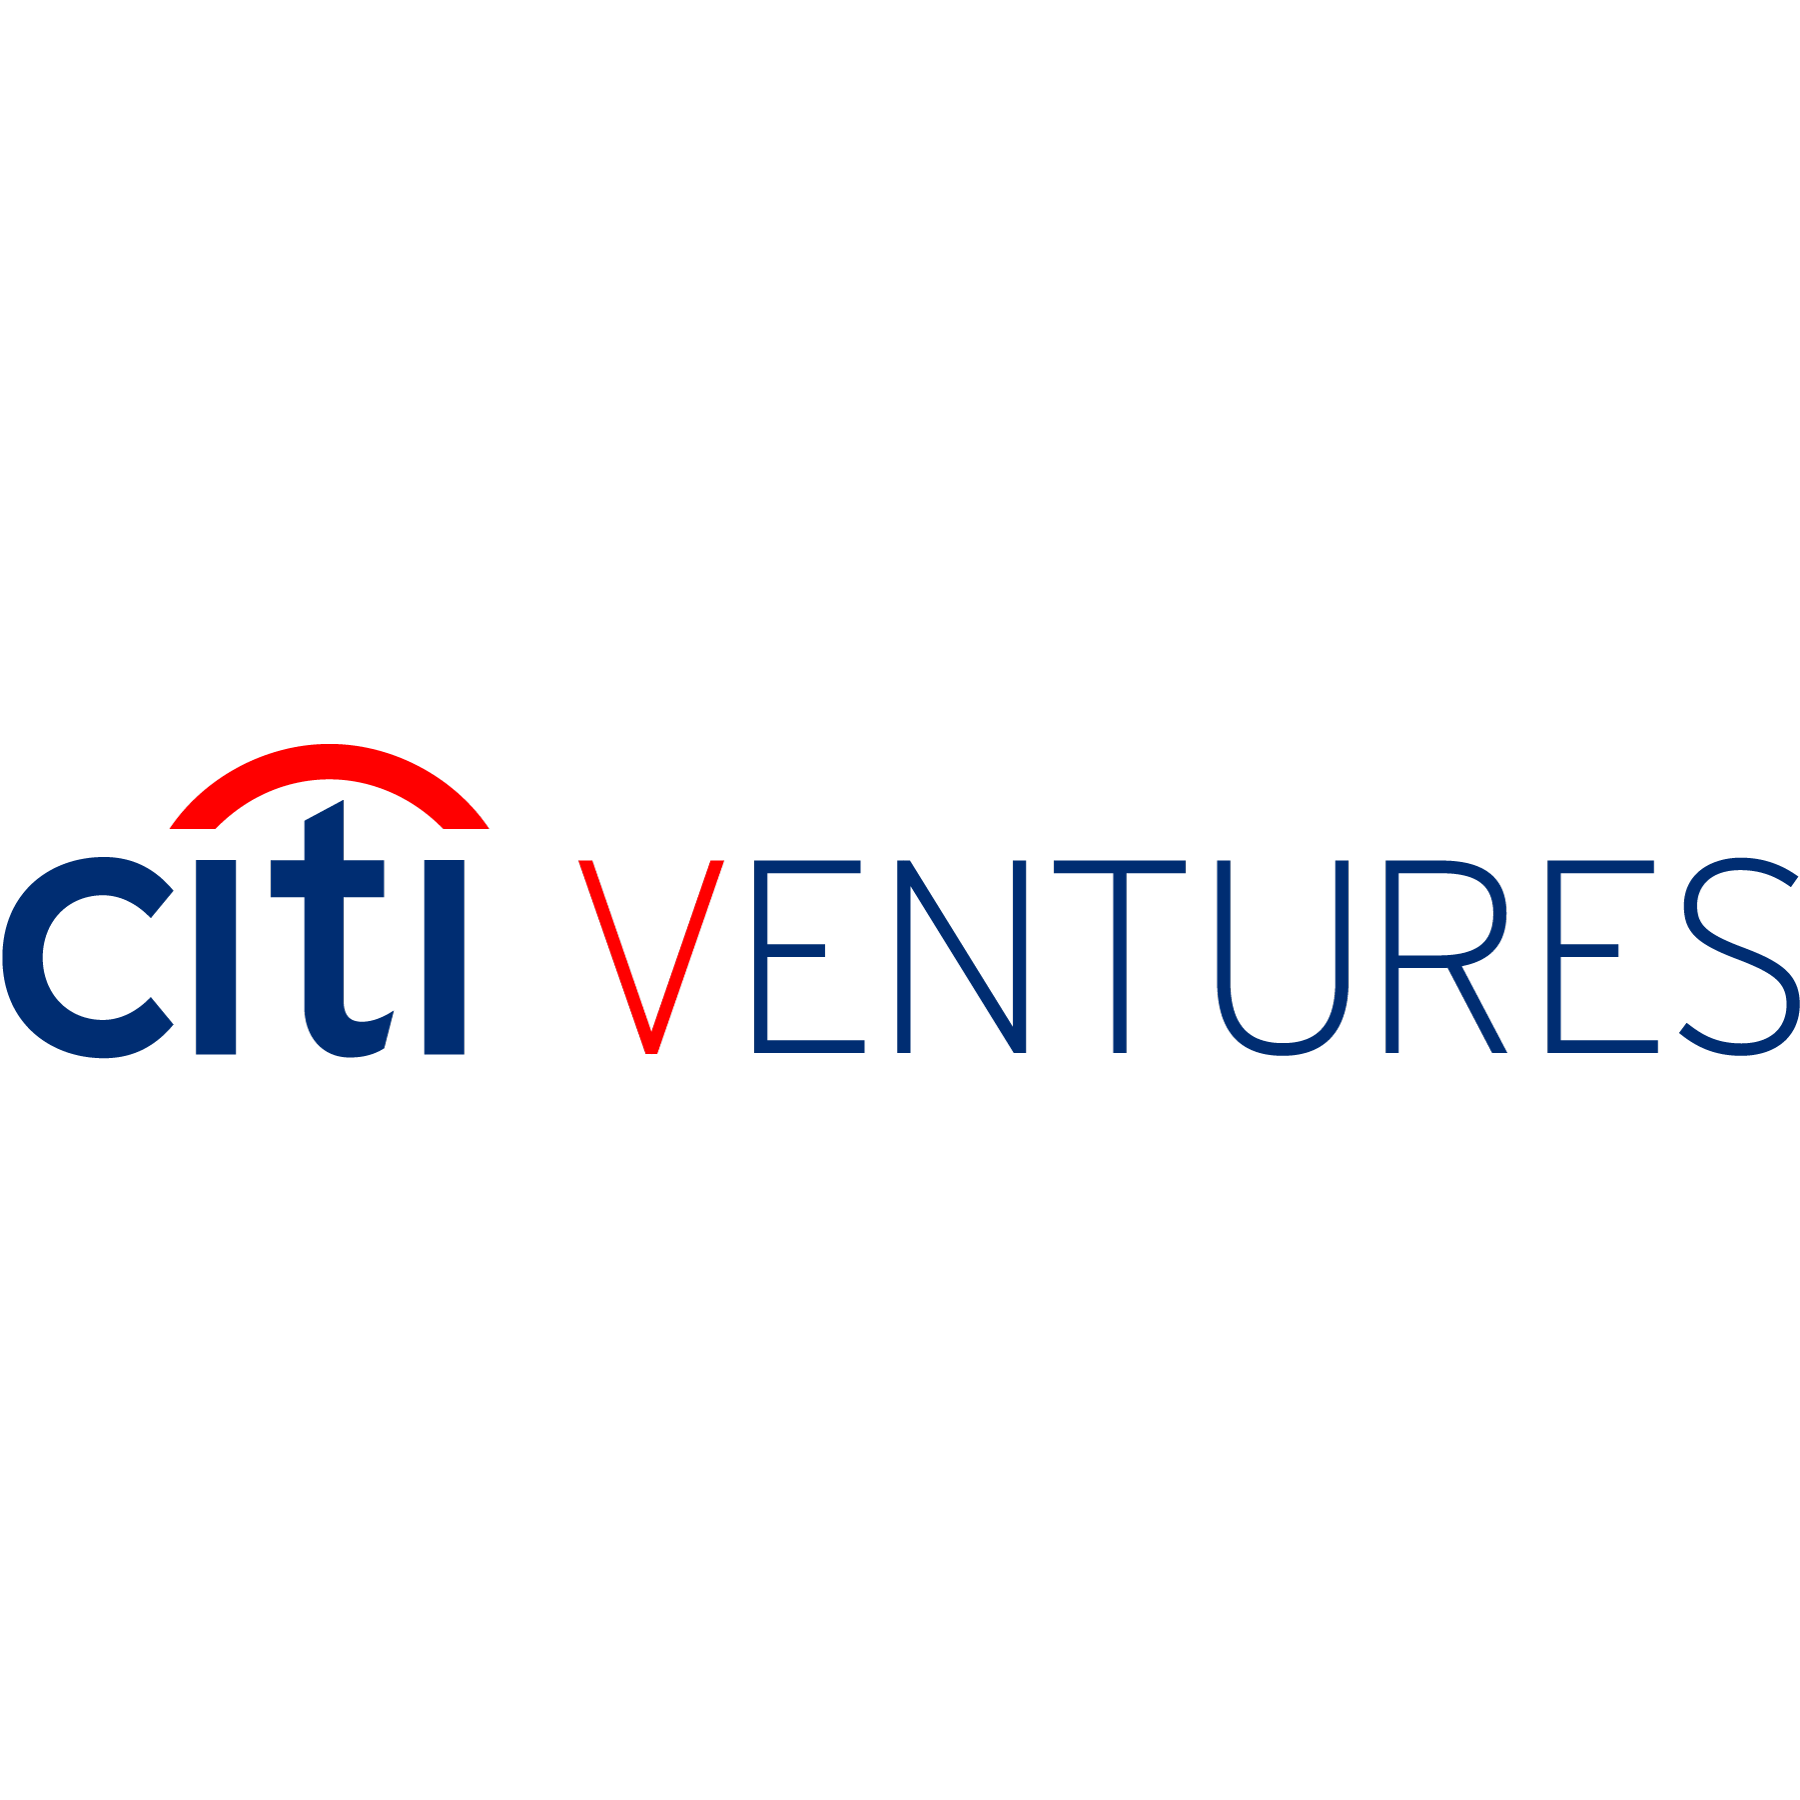 Citi Ventures Logo